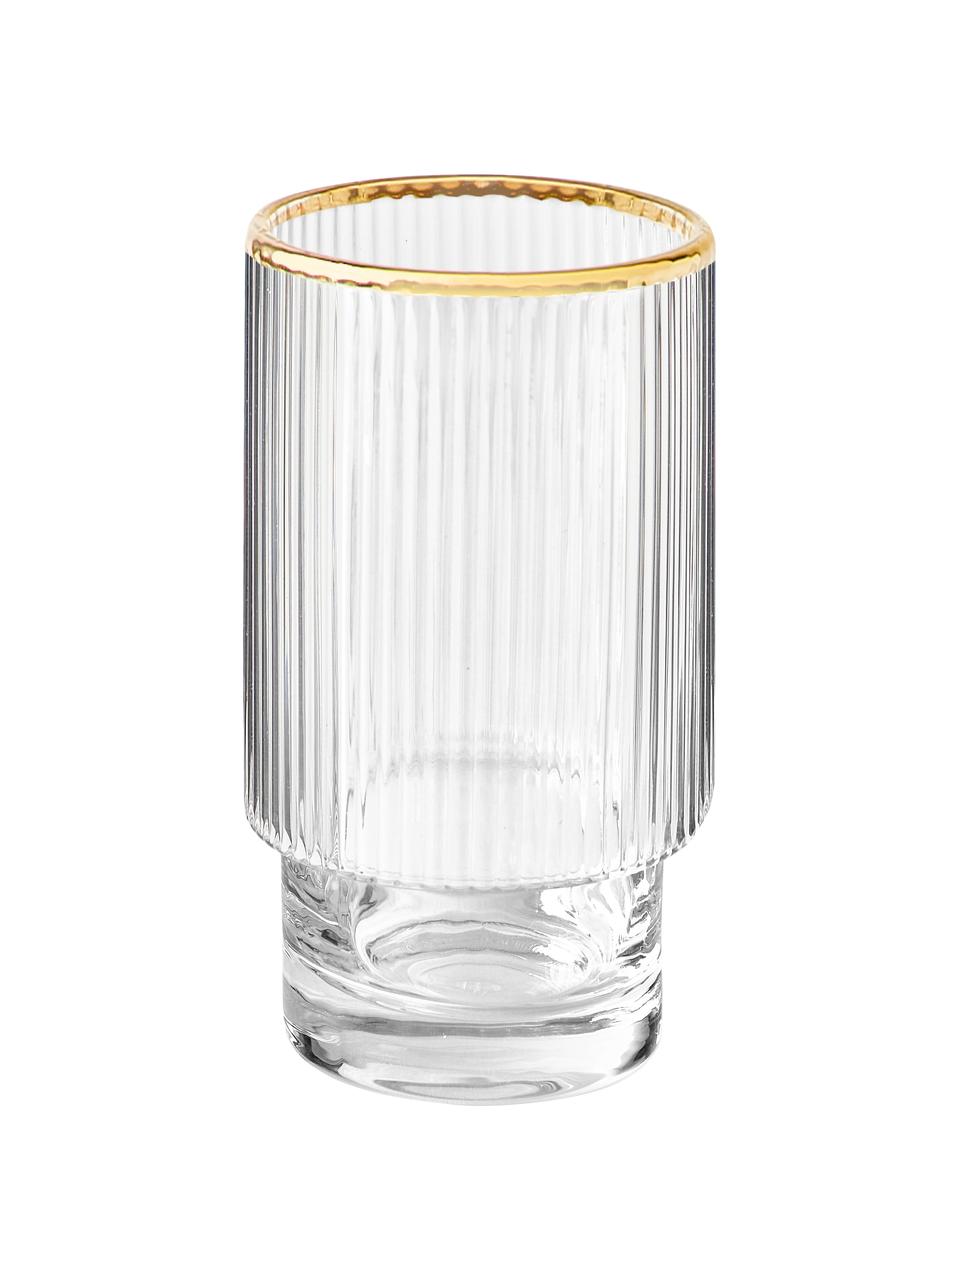 Handgefertigte Wassergläser Minna mit Rillenrelief und Goldrand, 4 Stück, Glas, mundgeblasen, Transparent mit Goldrand, Ø 8 x H 14 cm